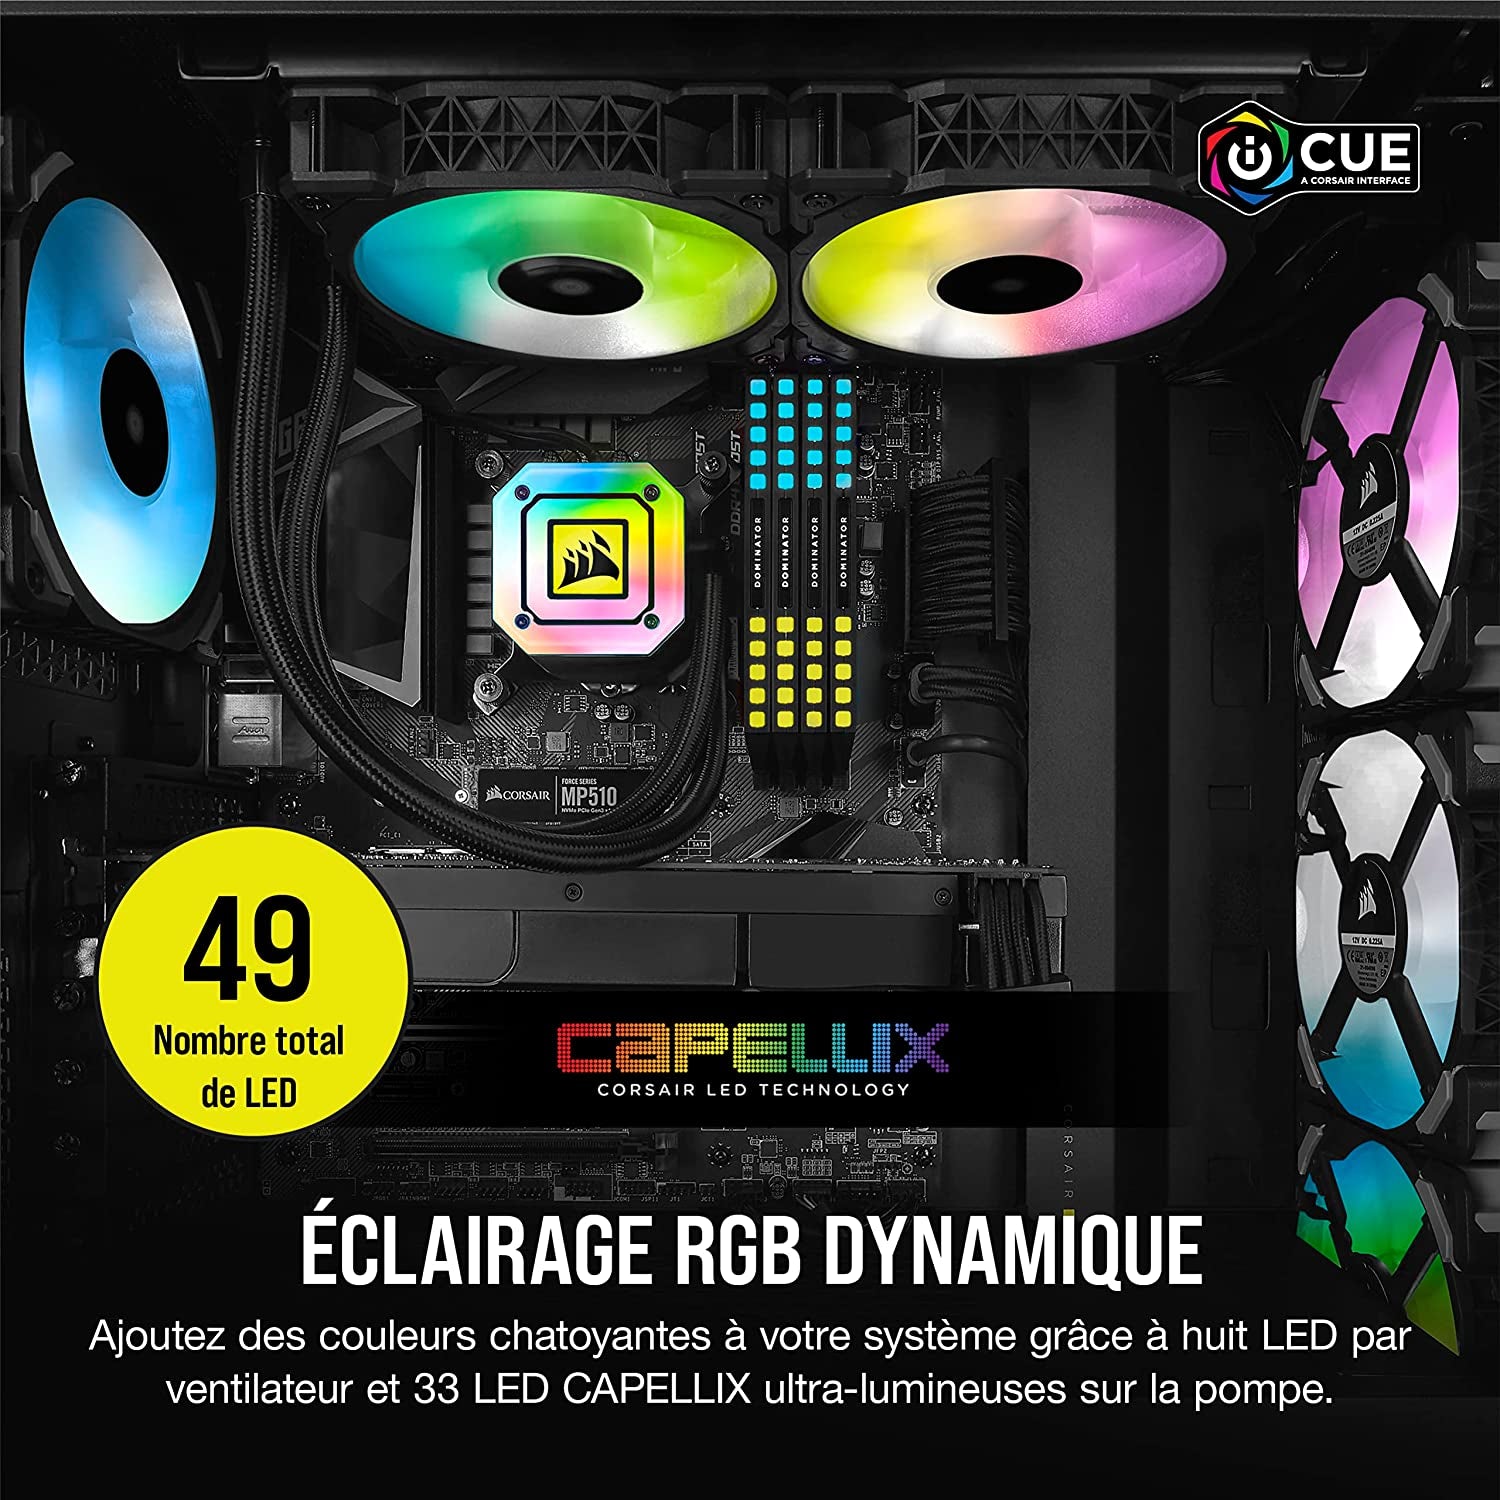 Icue H115I Elite Capellix Liquid CPU Cooler